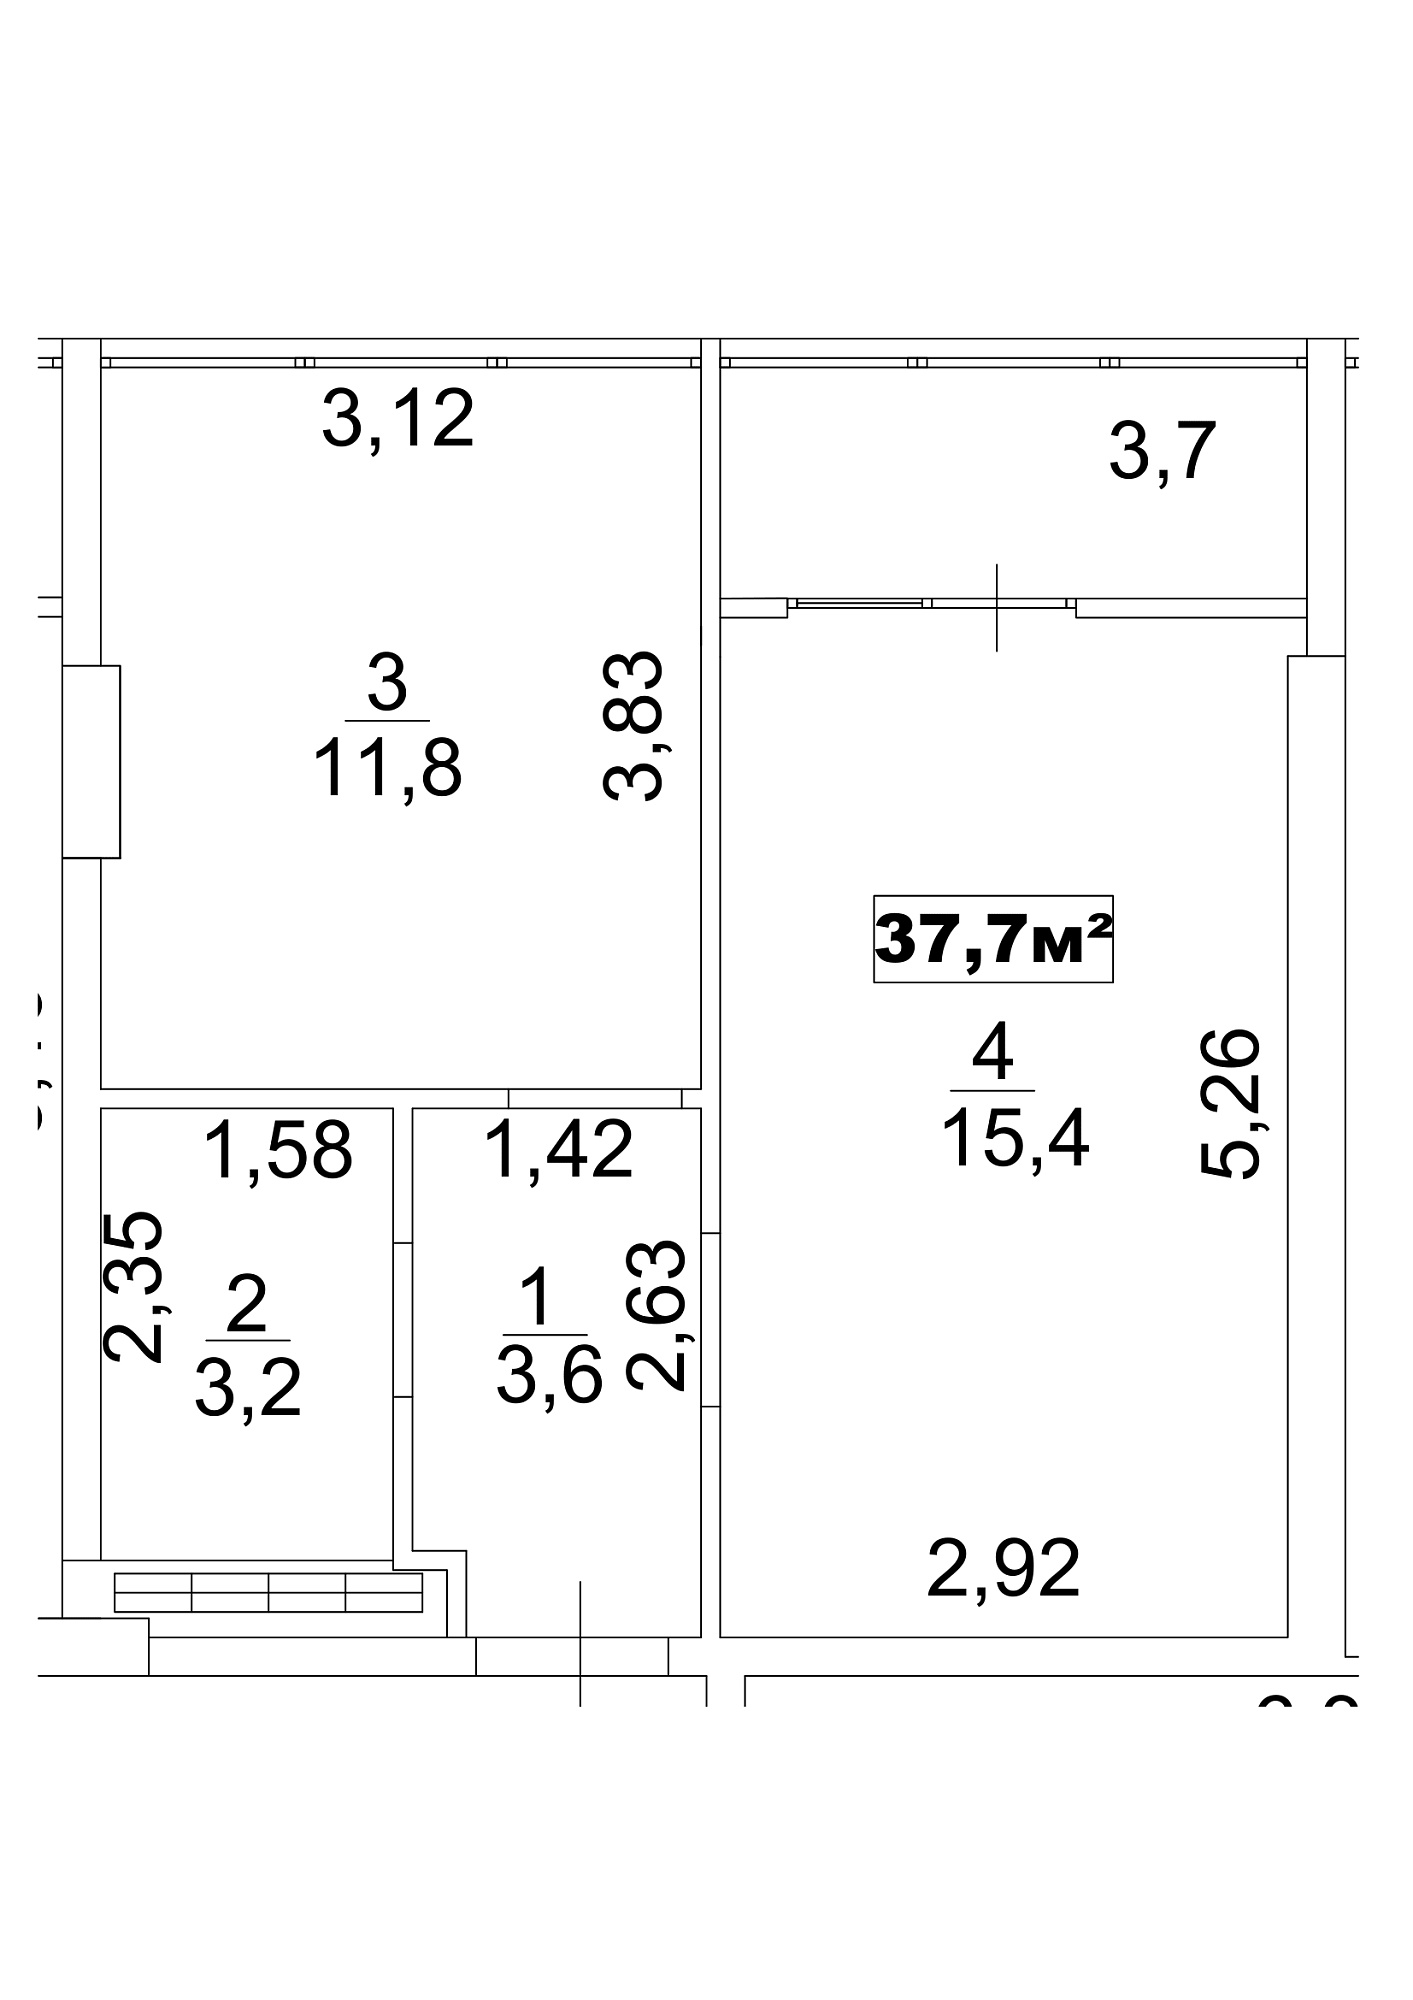 Планировка 1-к квартира площей 37.7м2, AB-13-02/0012а.